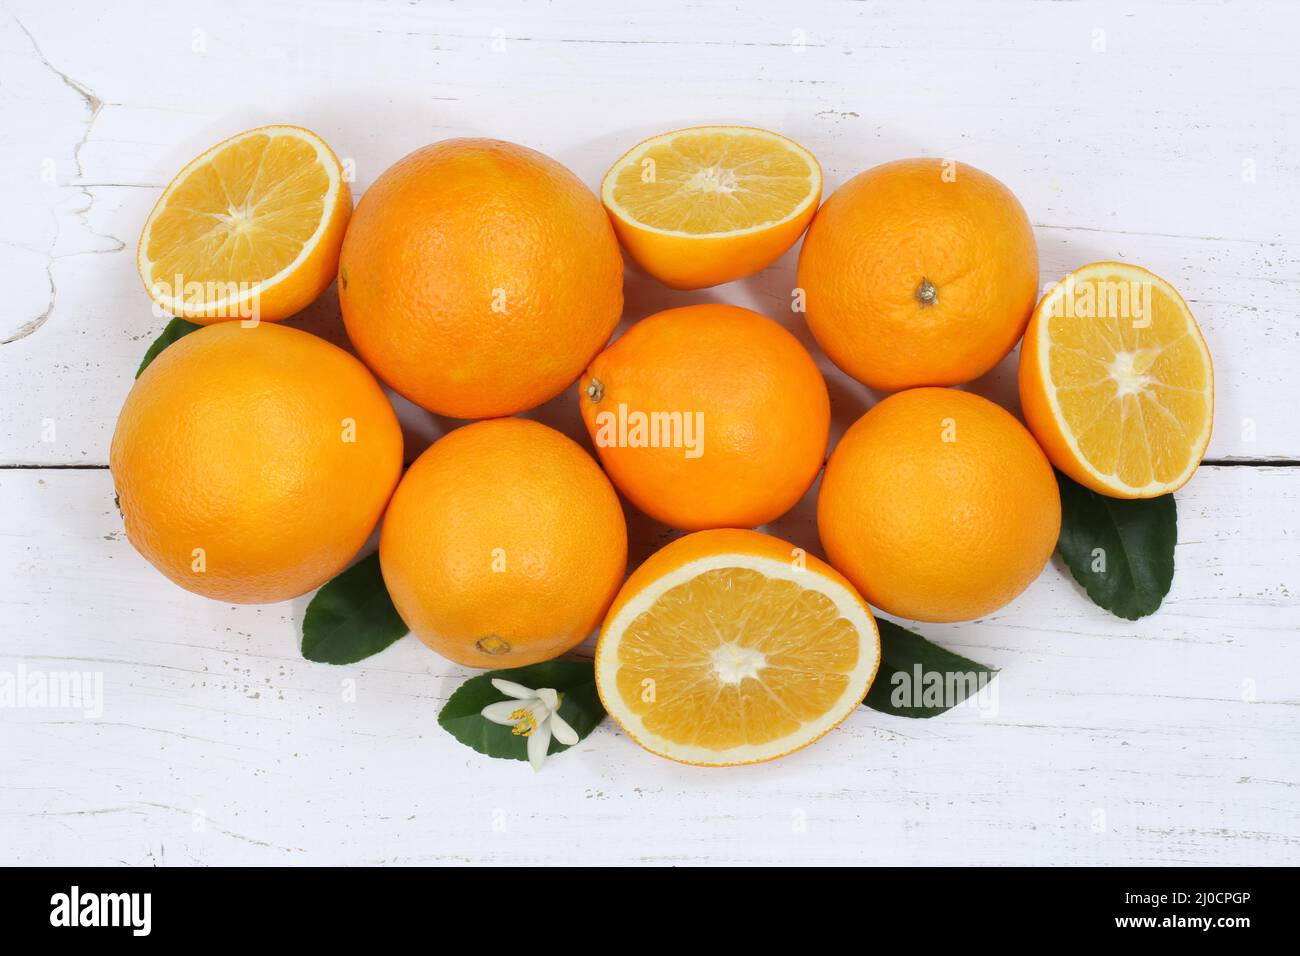 Orange orange fruits from above Stock Photo